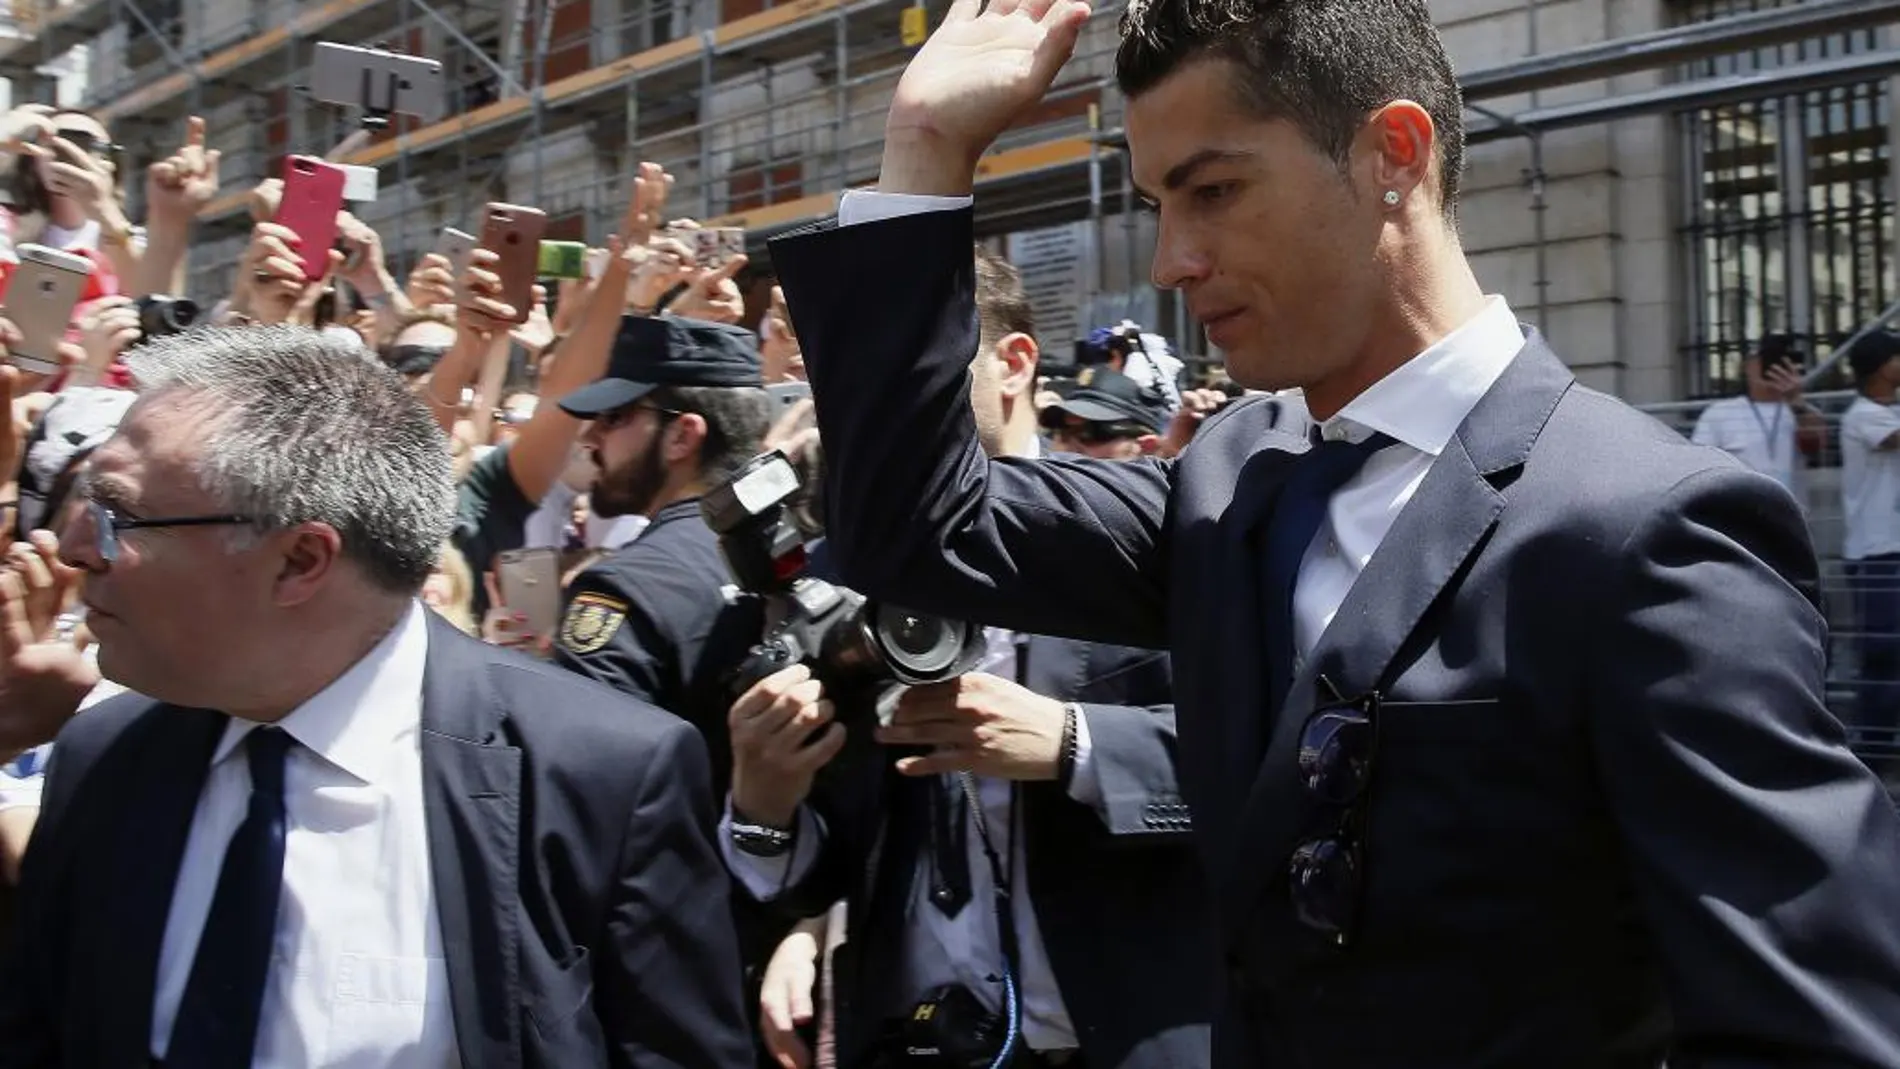 El delantero portugués del Real Madrid, Cristiano Ronaldo.